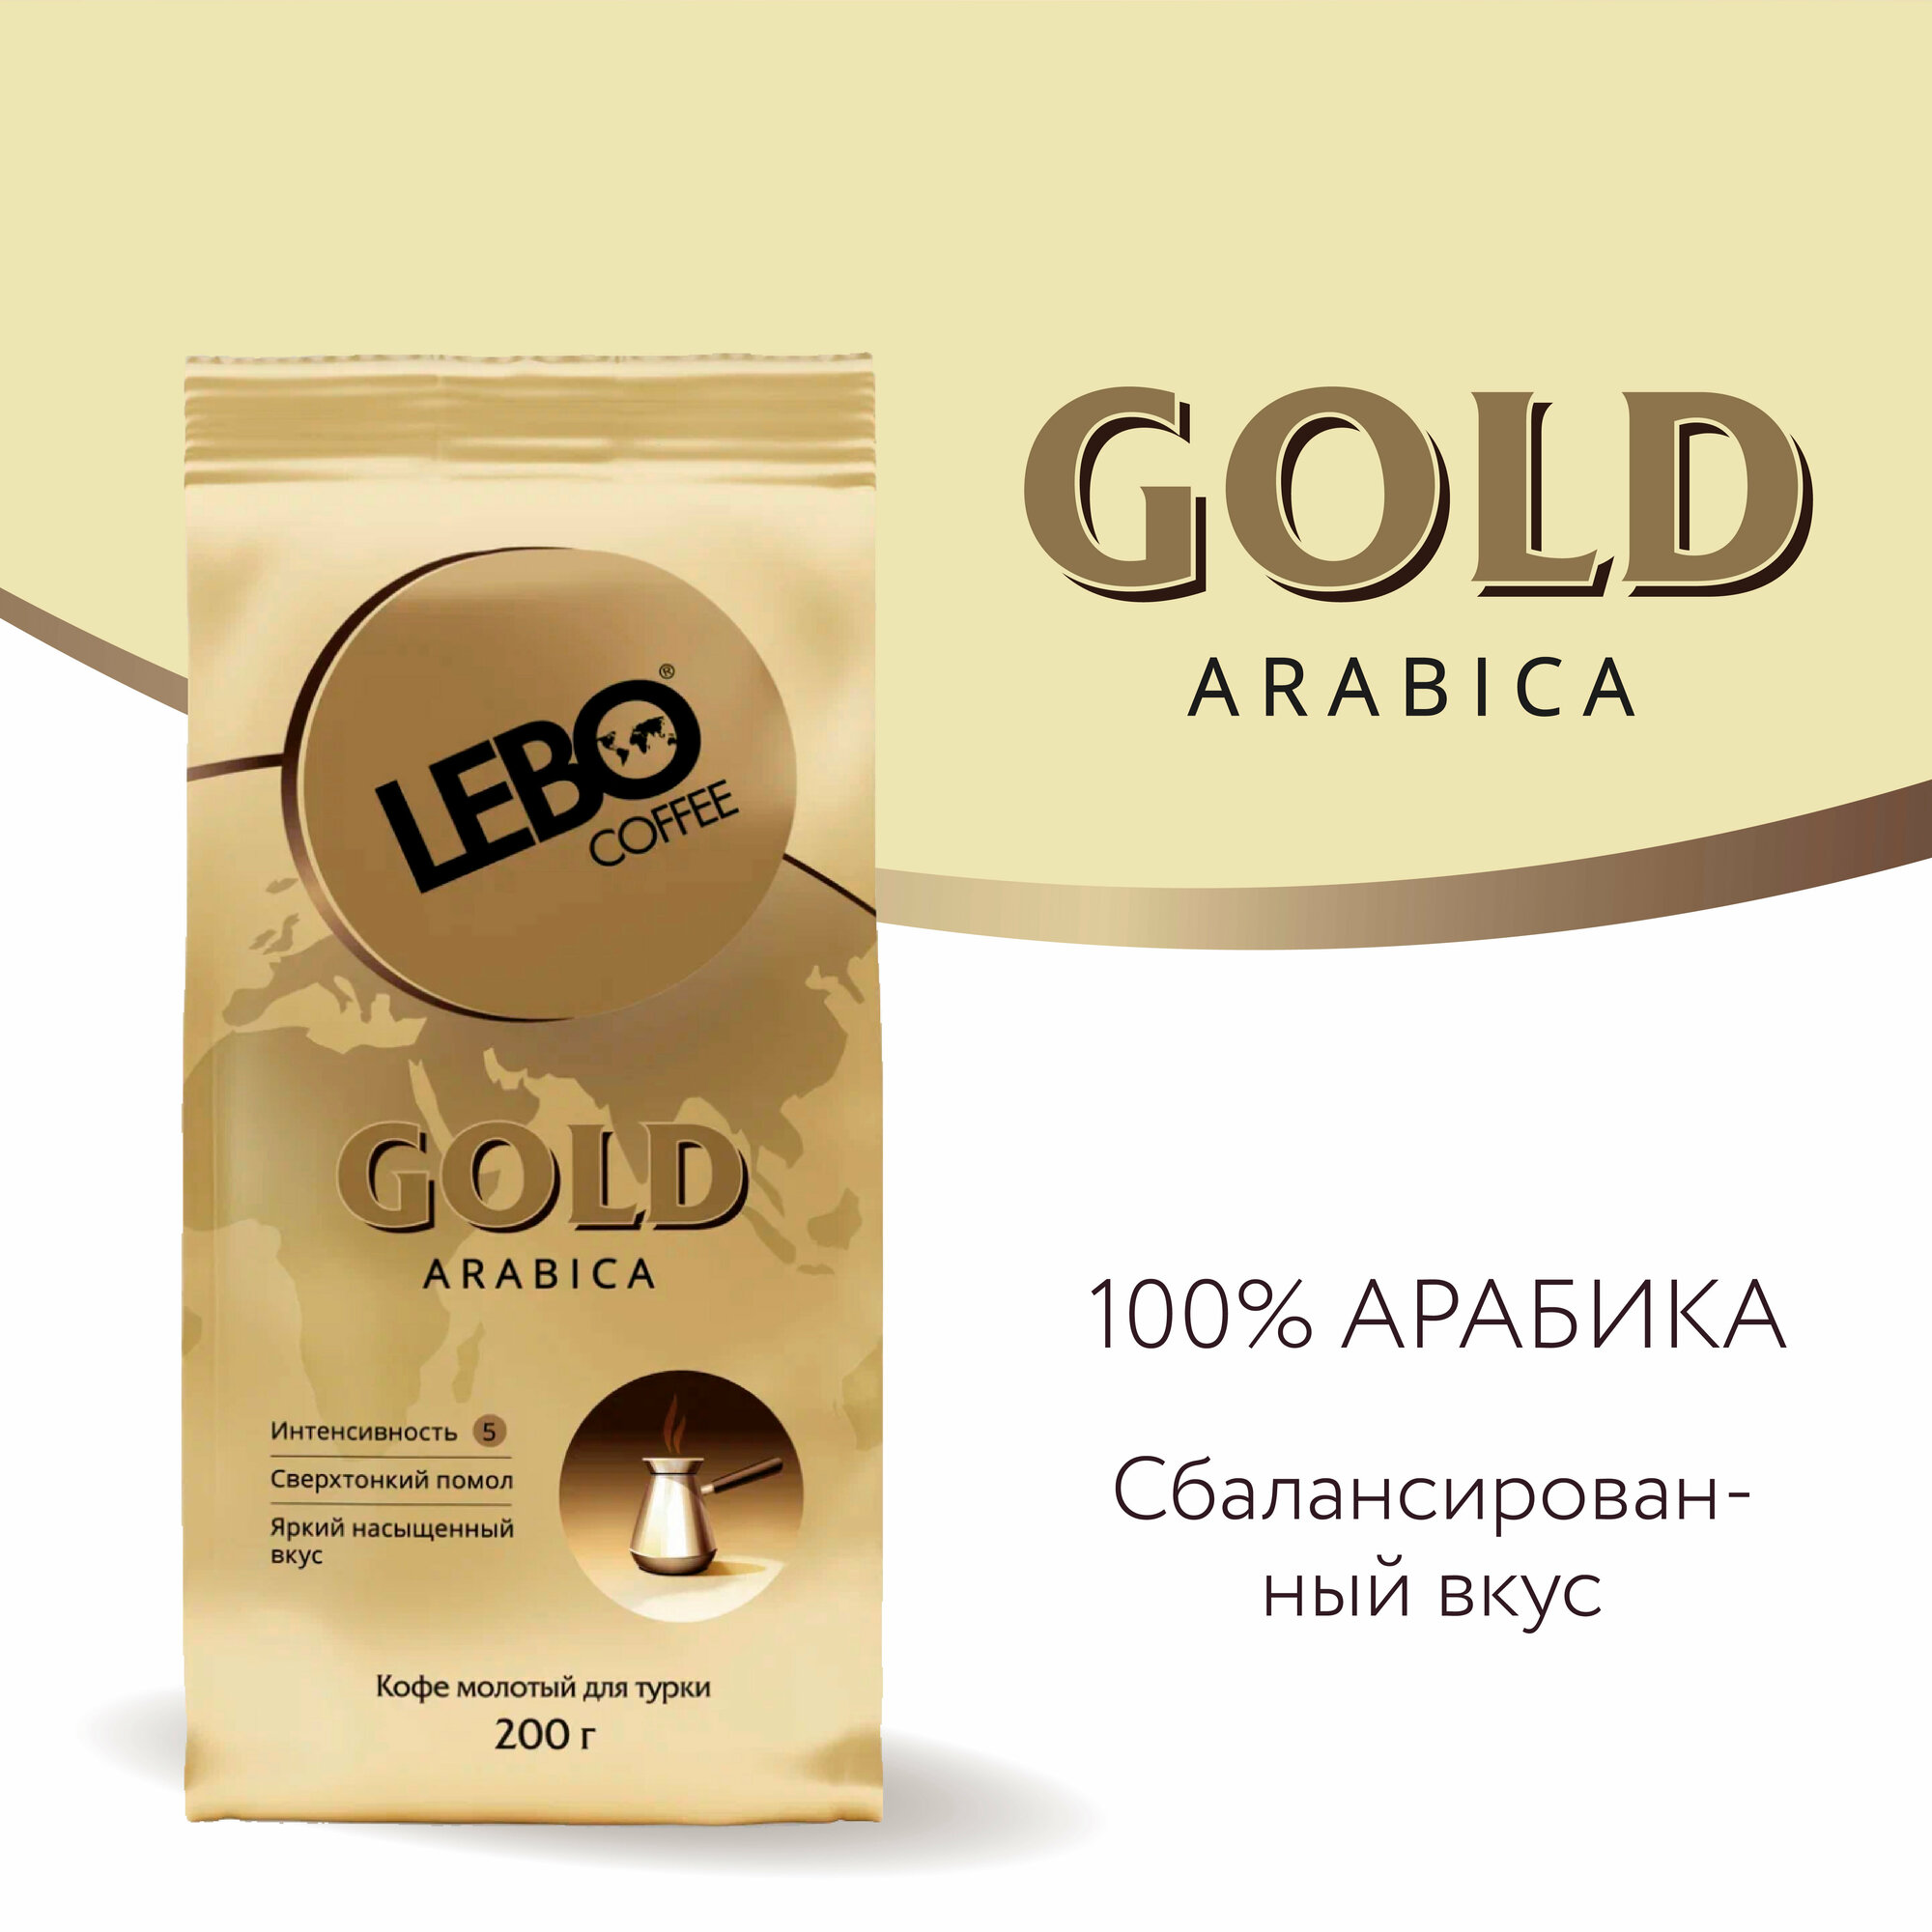 Кофе молотый для турки LEBO Gold Арабика, средняя обжарка, 200 г